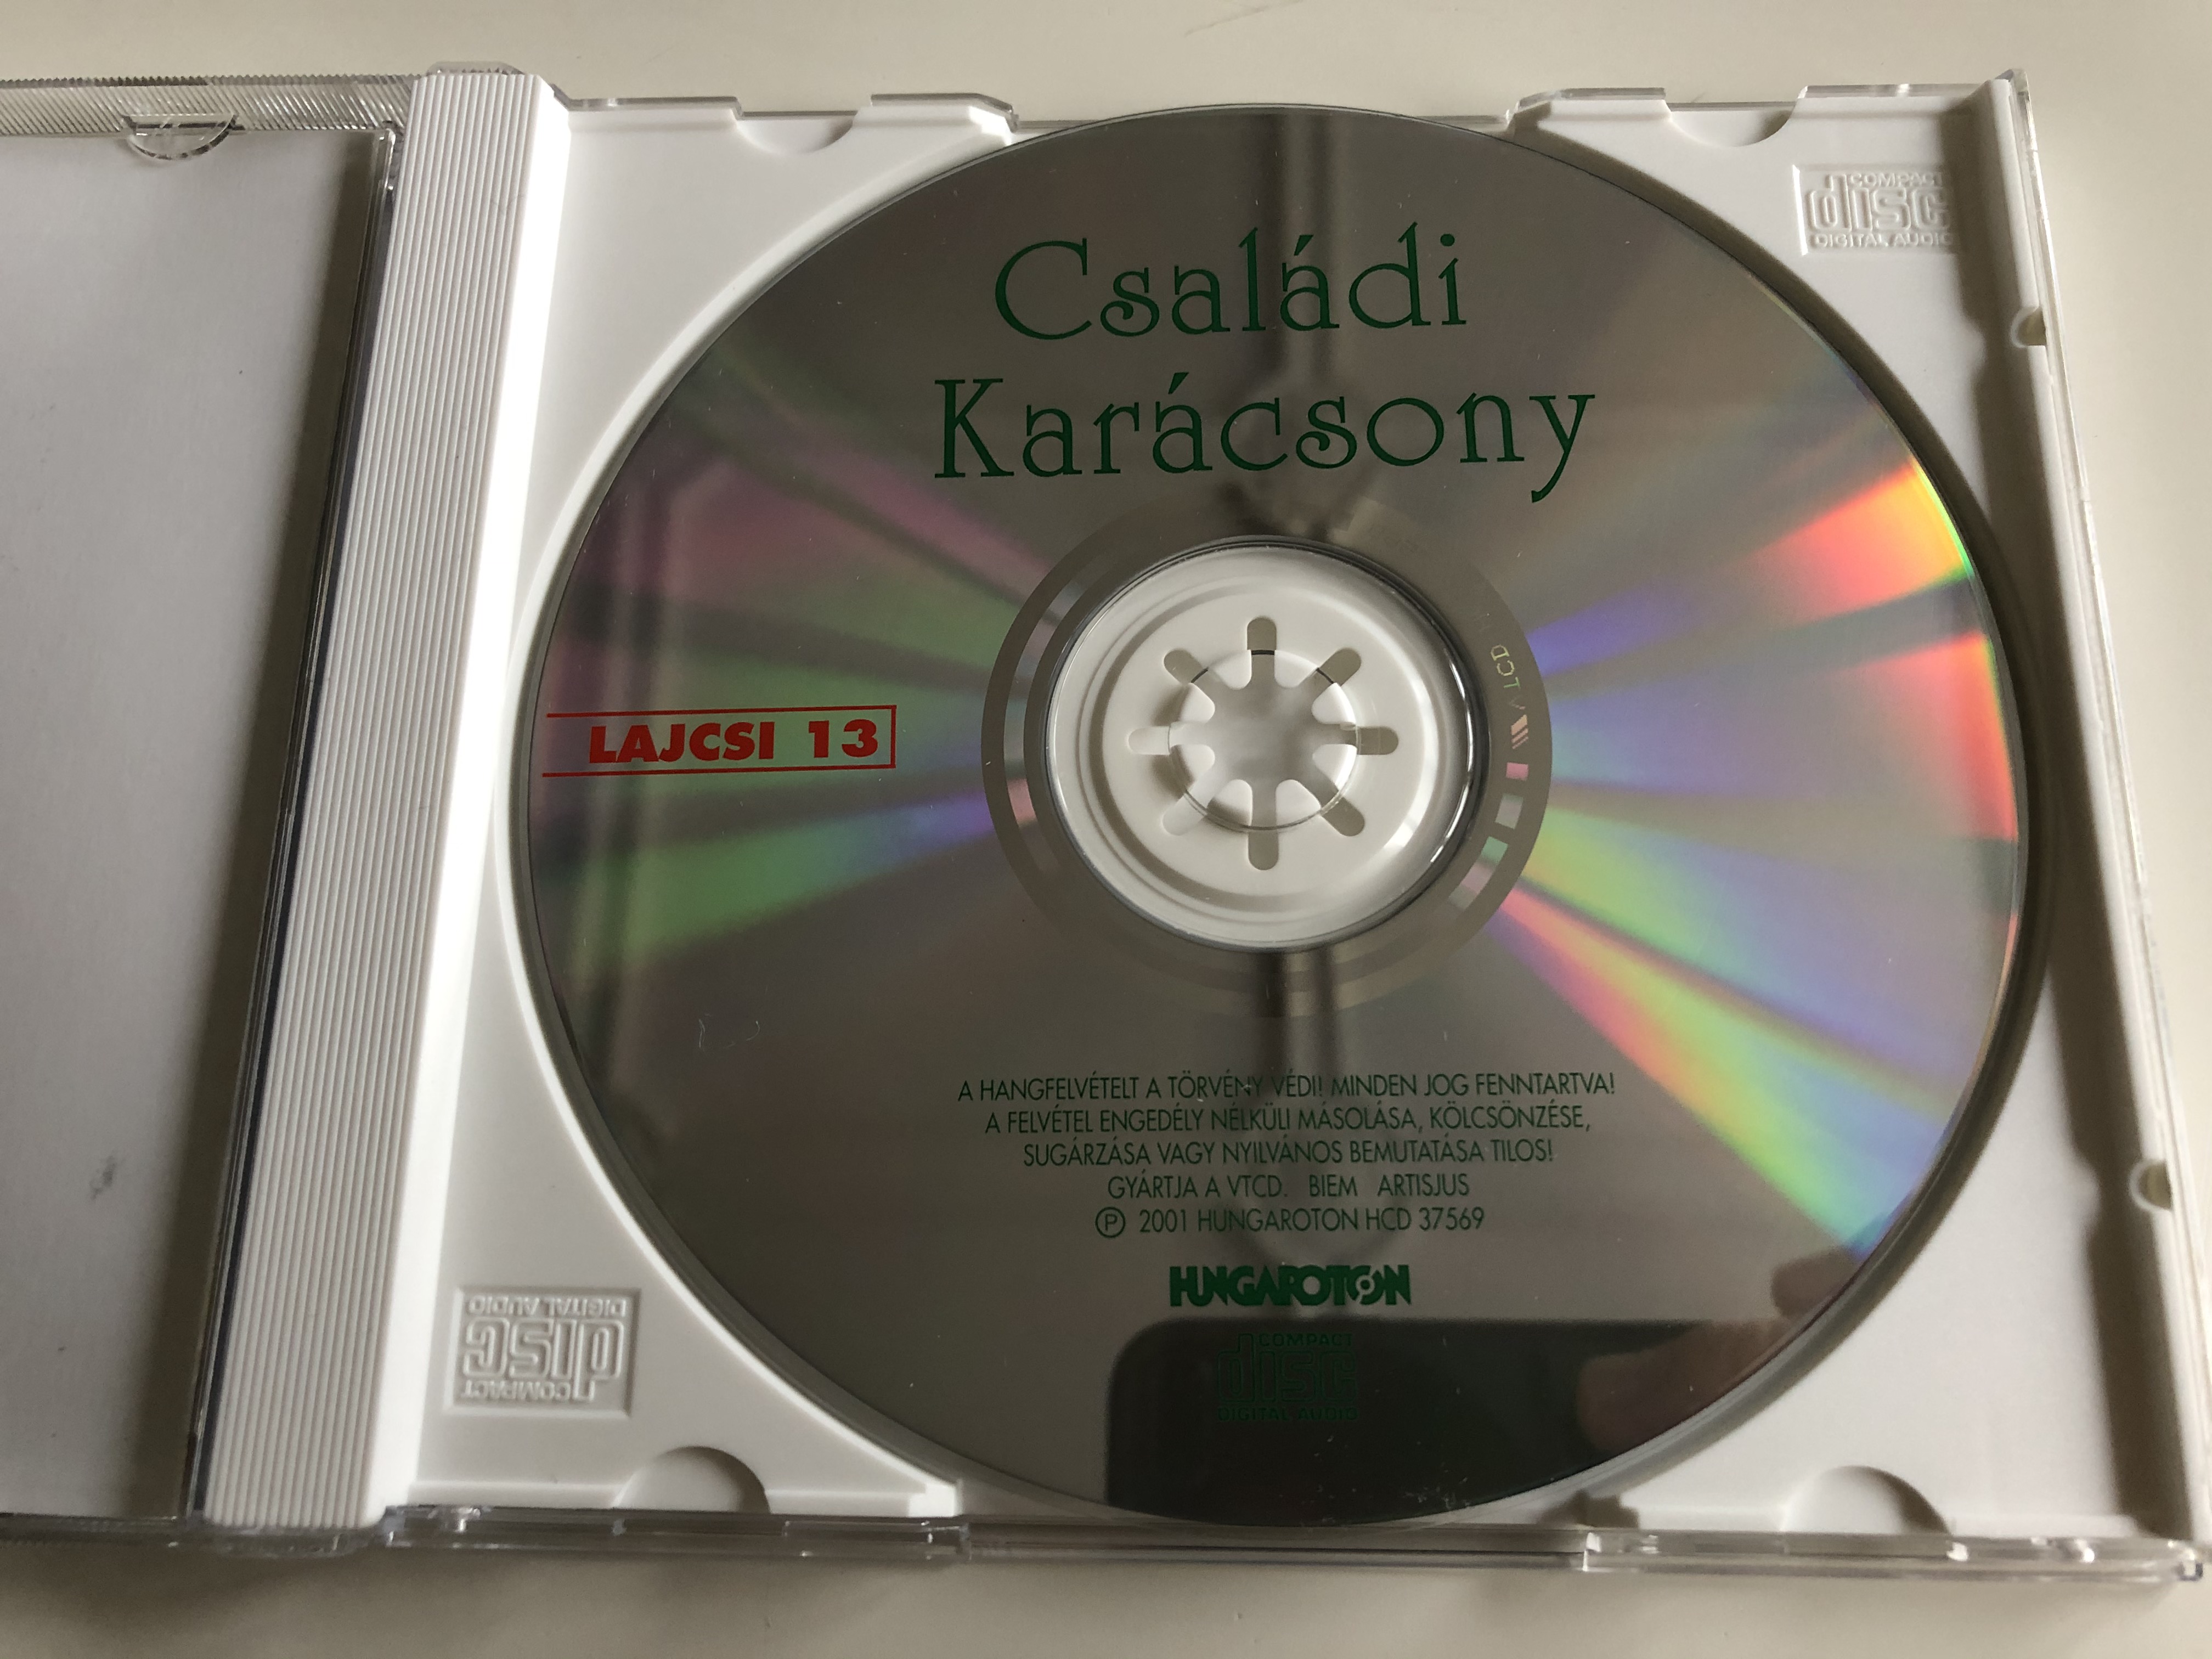 csal-di-kar-csony-lagzi-lajcsi-13-hungaroton-audio-cd-2001-hcd-37569-6-.jpg